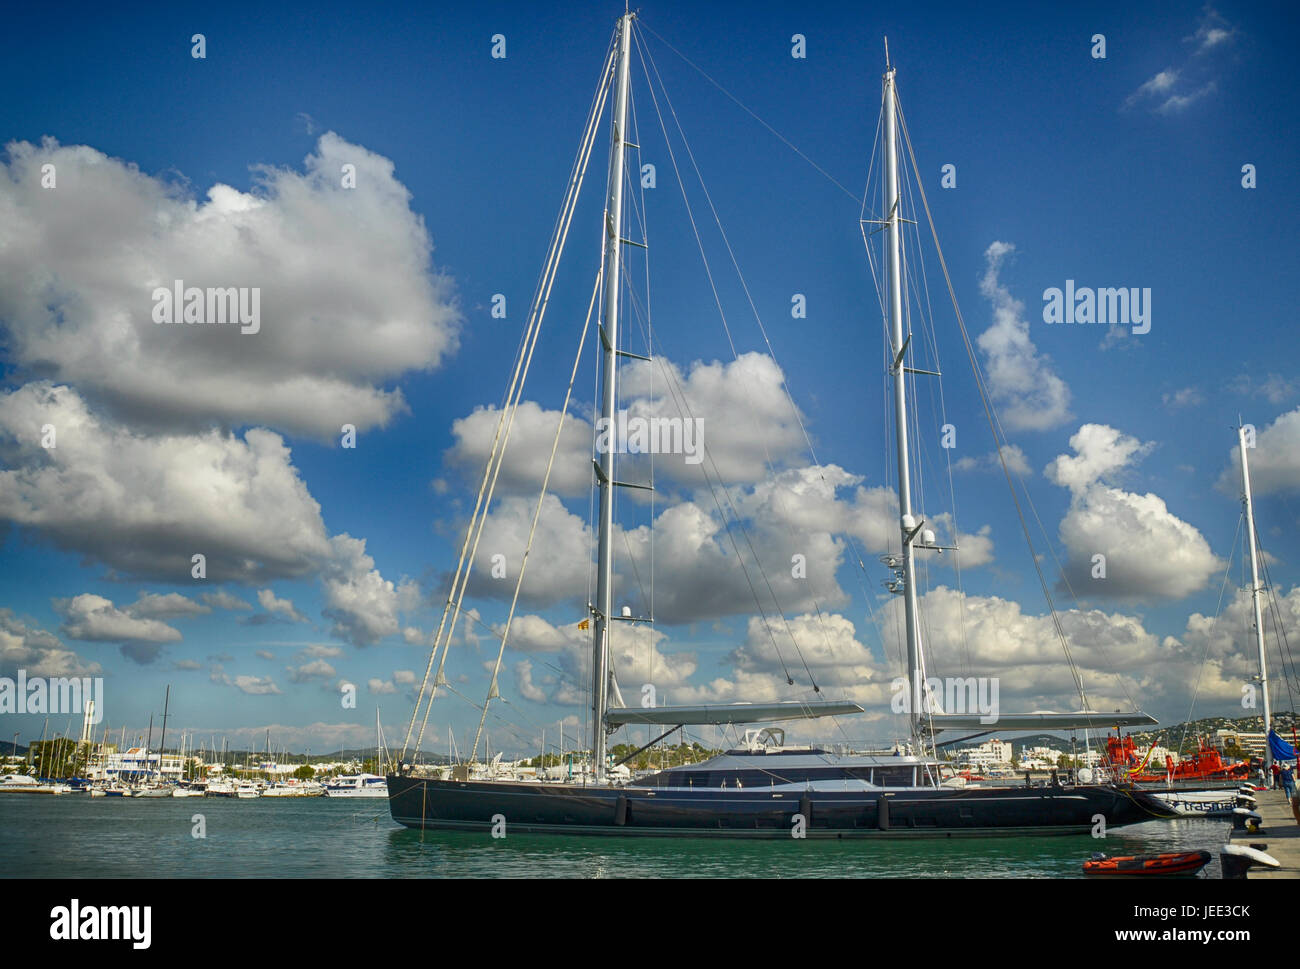 Large luxury sailboat docked at the port of Ibiza Stock Photo